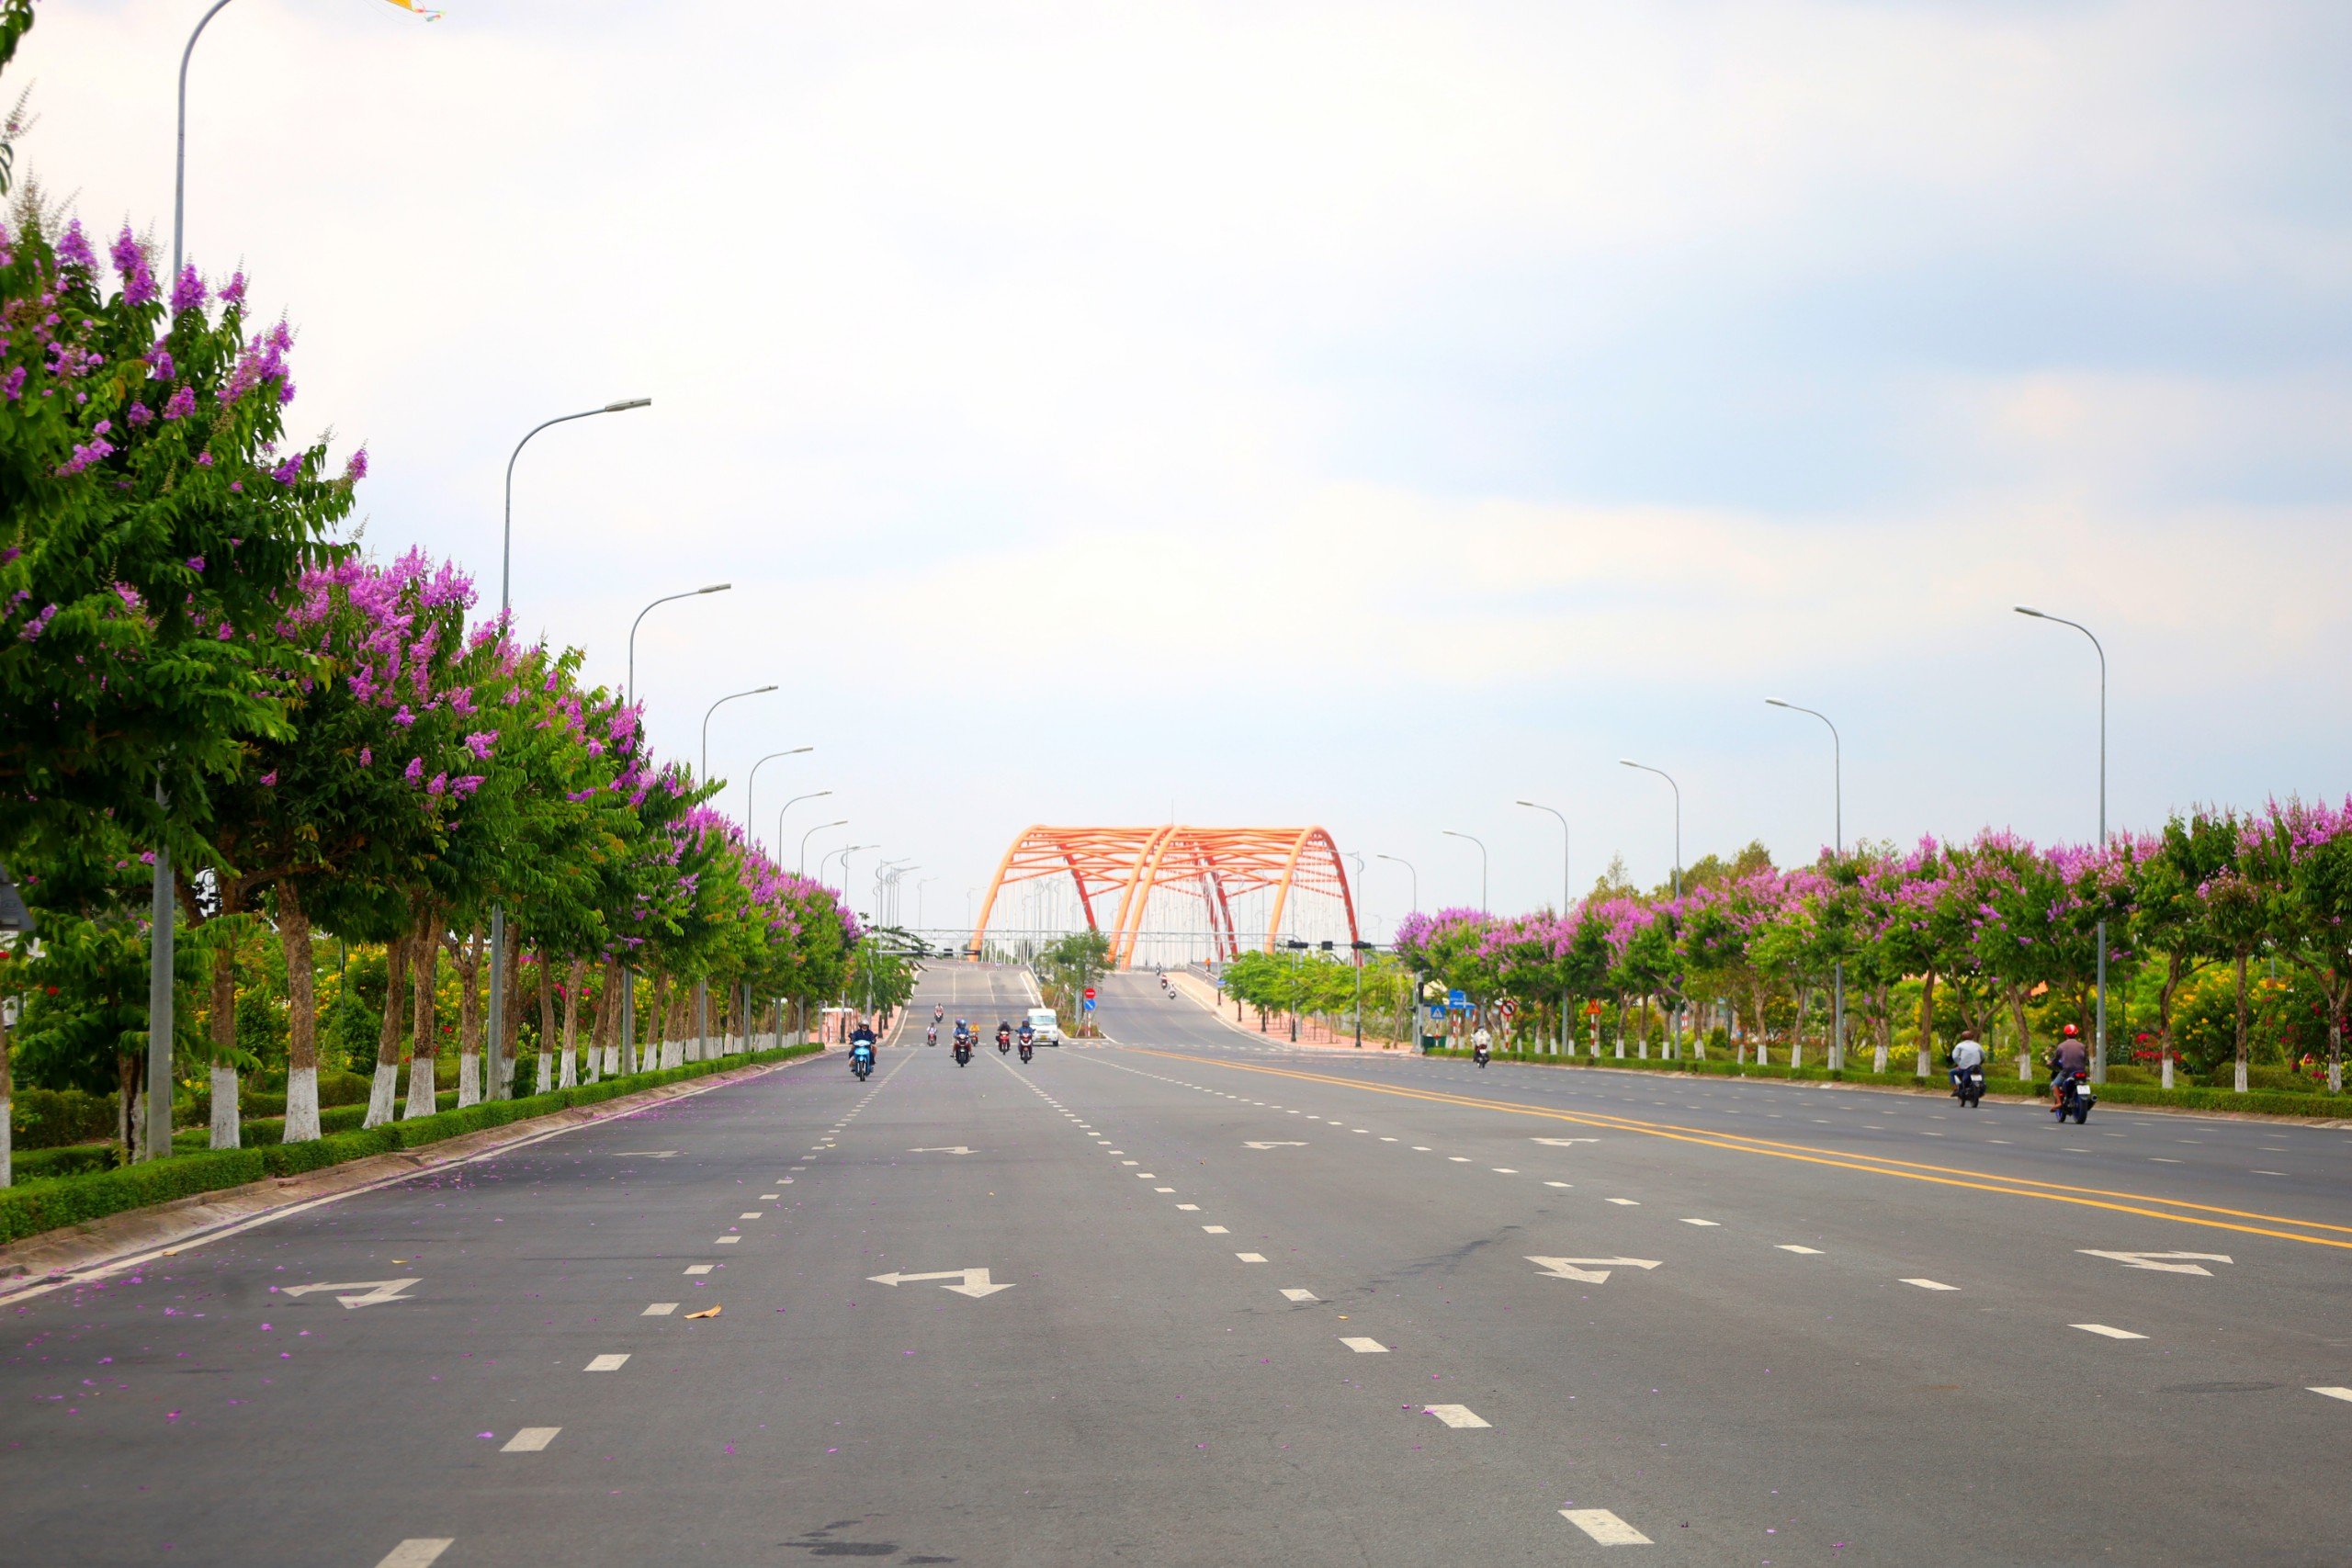 Con đường Võ Văn Kiệt được trồng hàng trăm cây bằng lăng có chiều dài khoảng 2 km đã thu hút ánh nhìn của nhiều người qua lại.